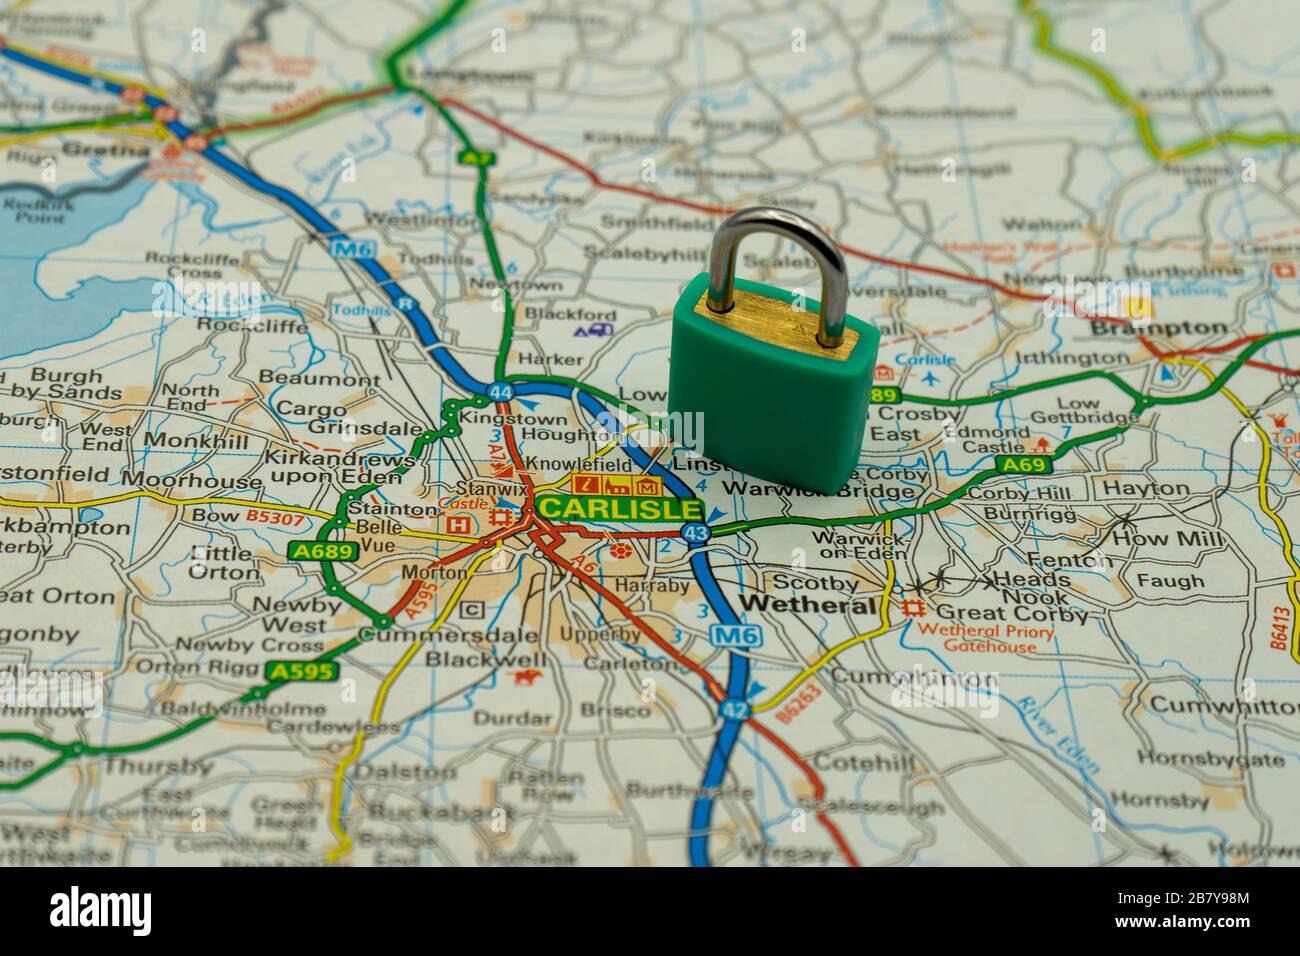 Carlisle affiché sur une carte routière ou géographique avec un cadenas sur le dessus pour représenter une ville en lock-down Banque D'Images